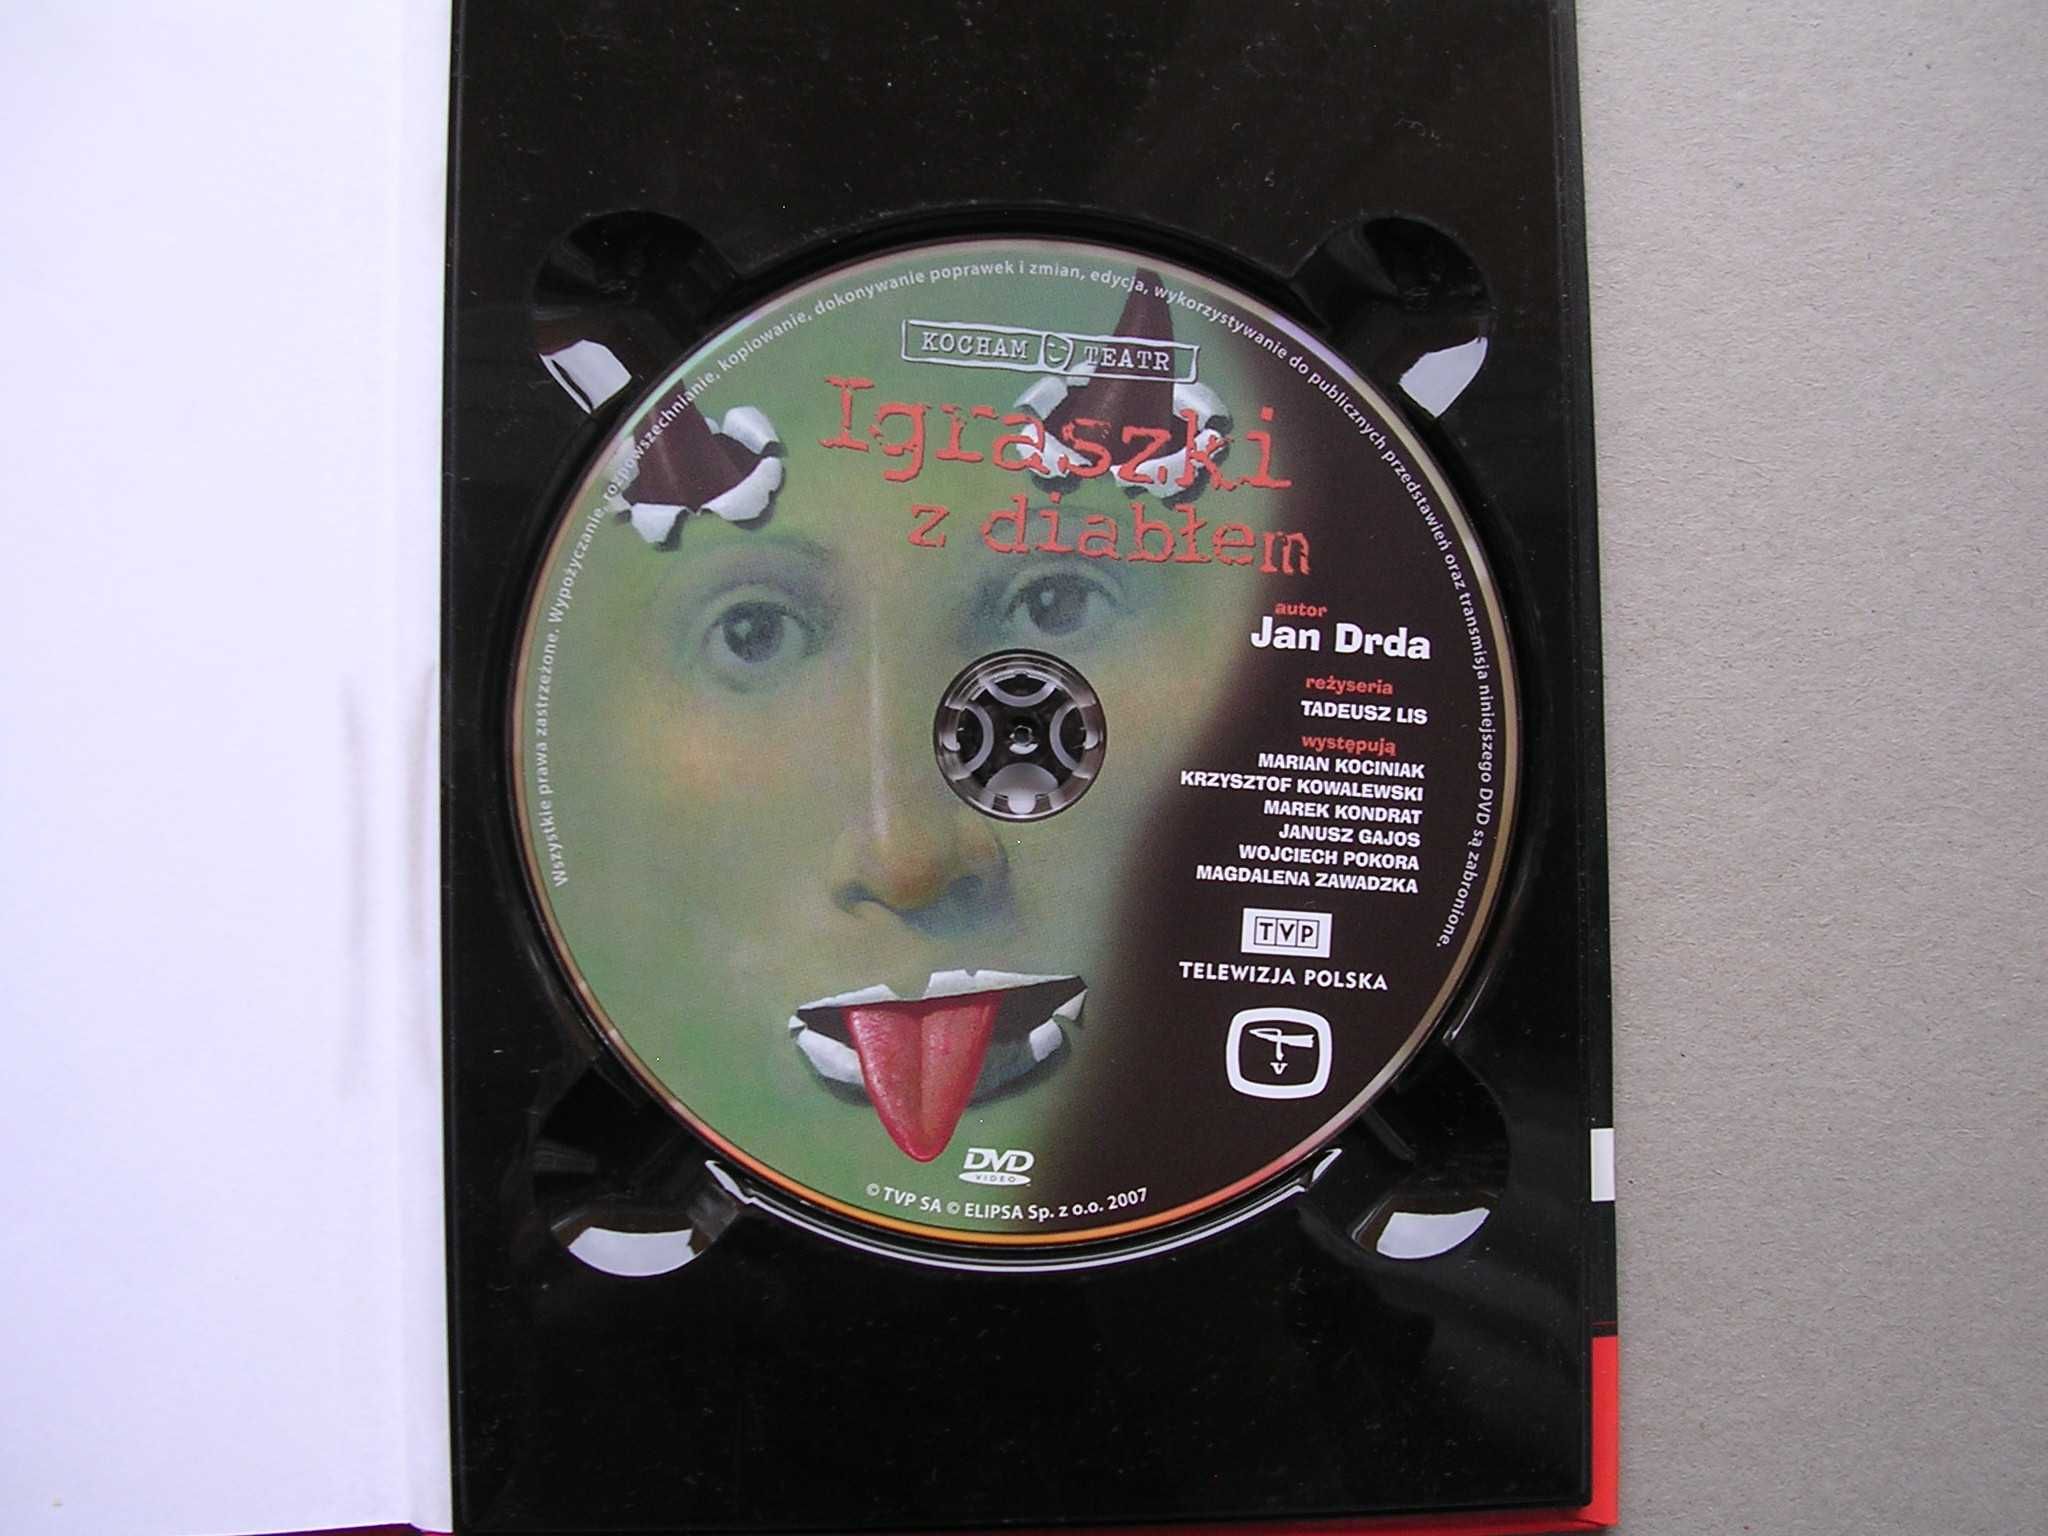 Płyta cd/dvd Igraszki z diabłem Jan Drda spektakl teatralny